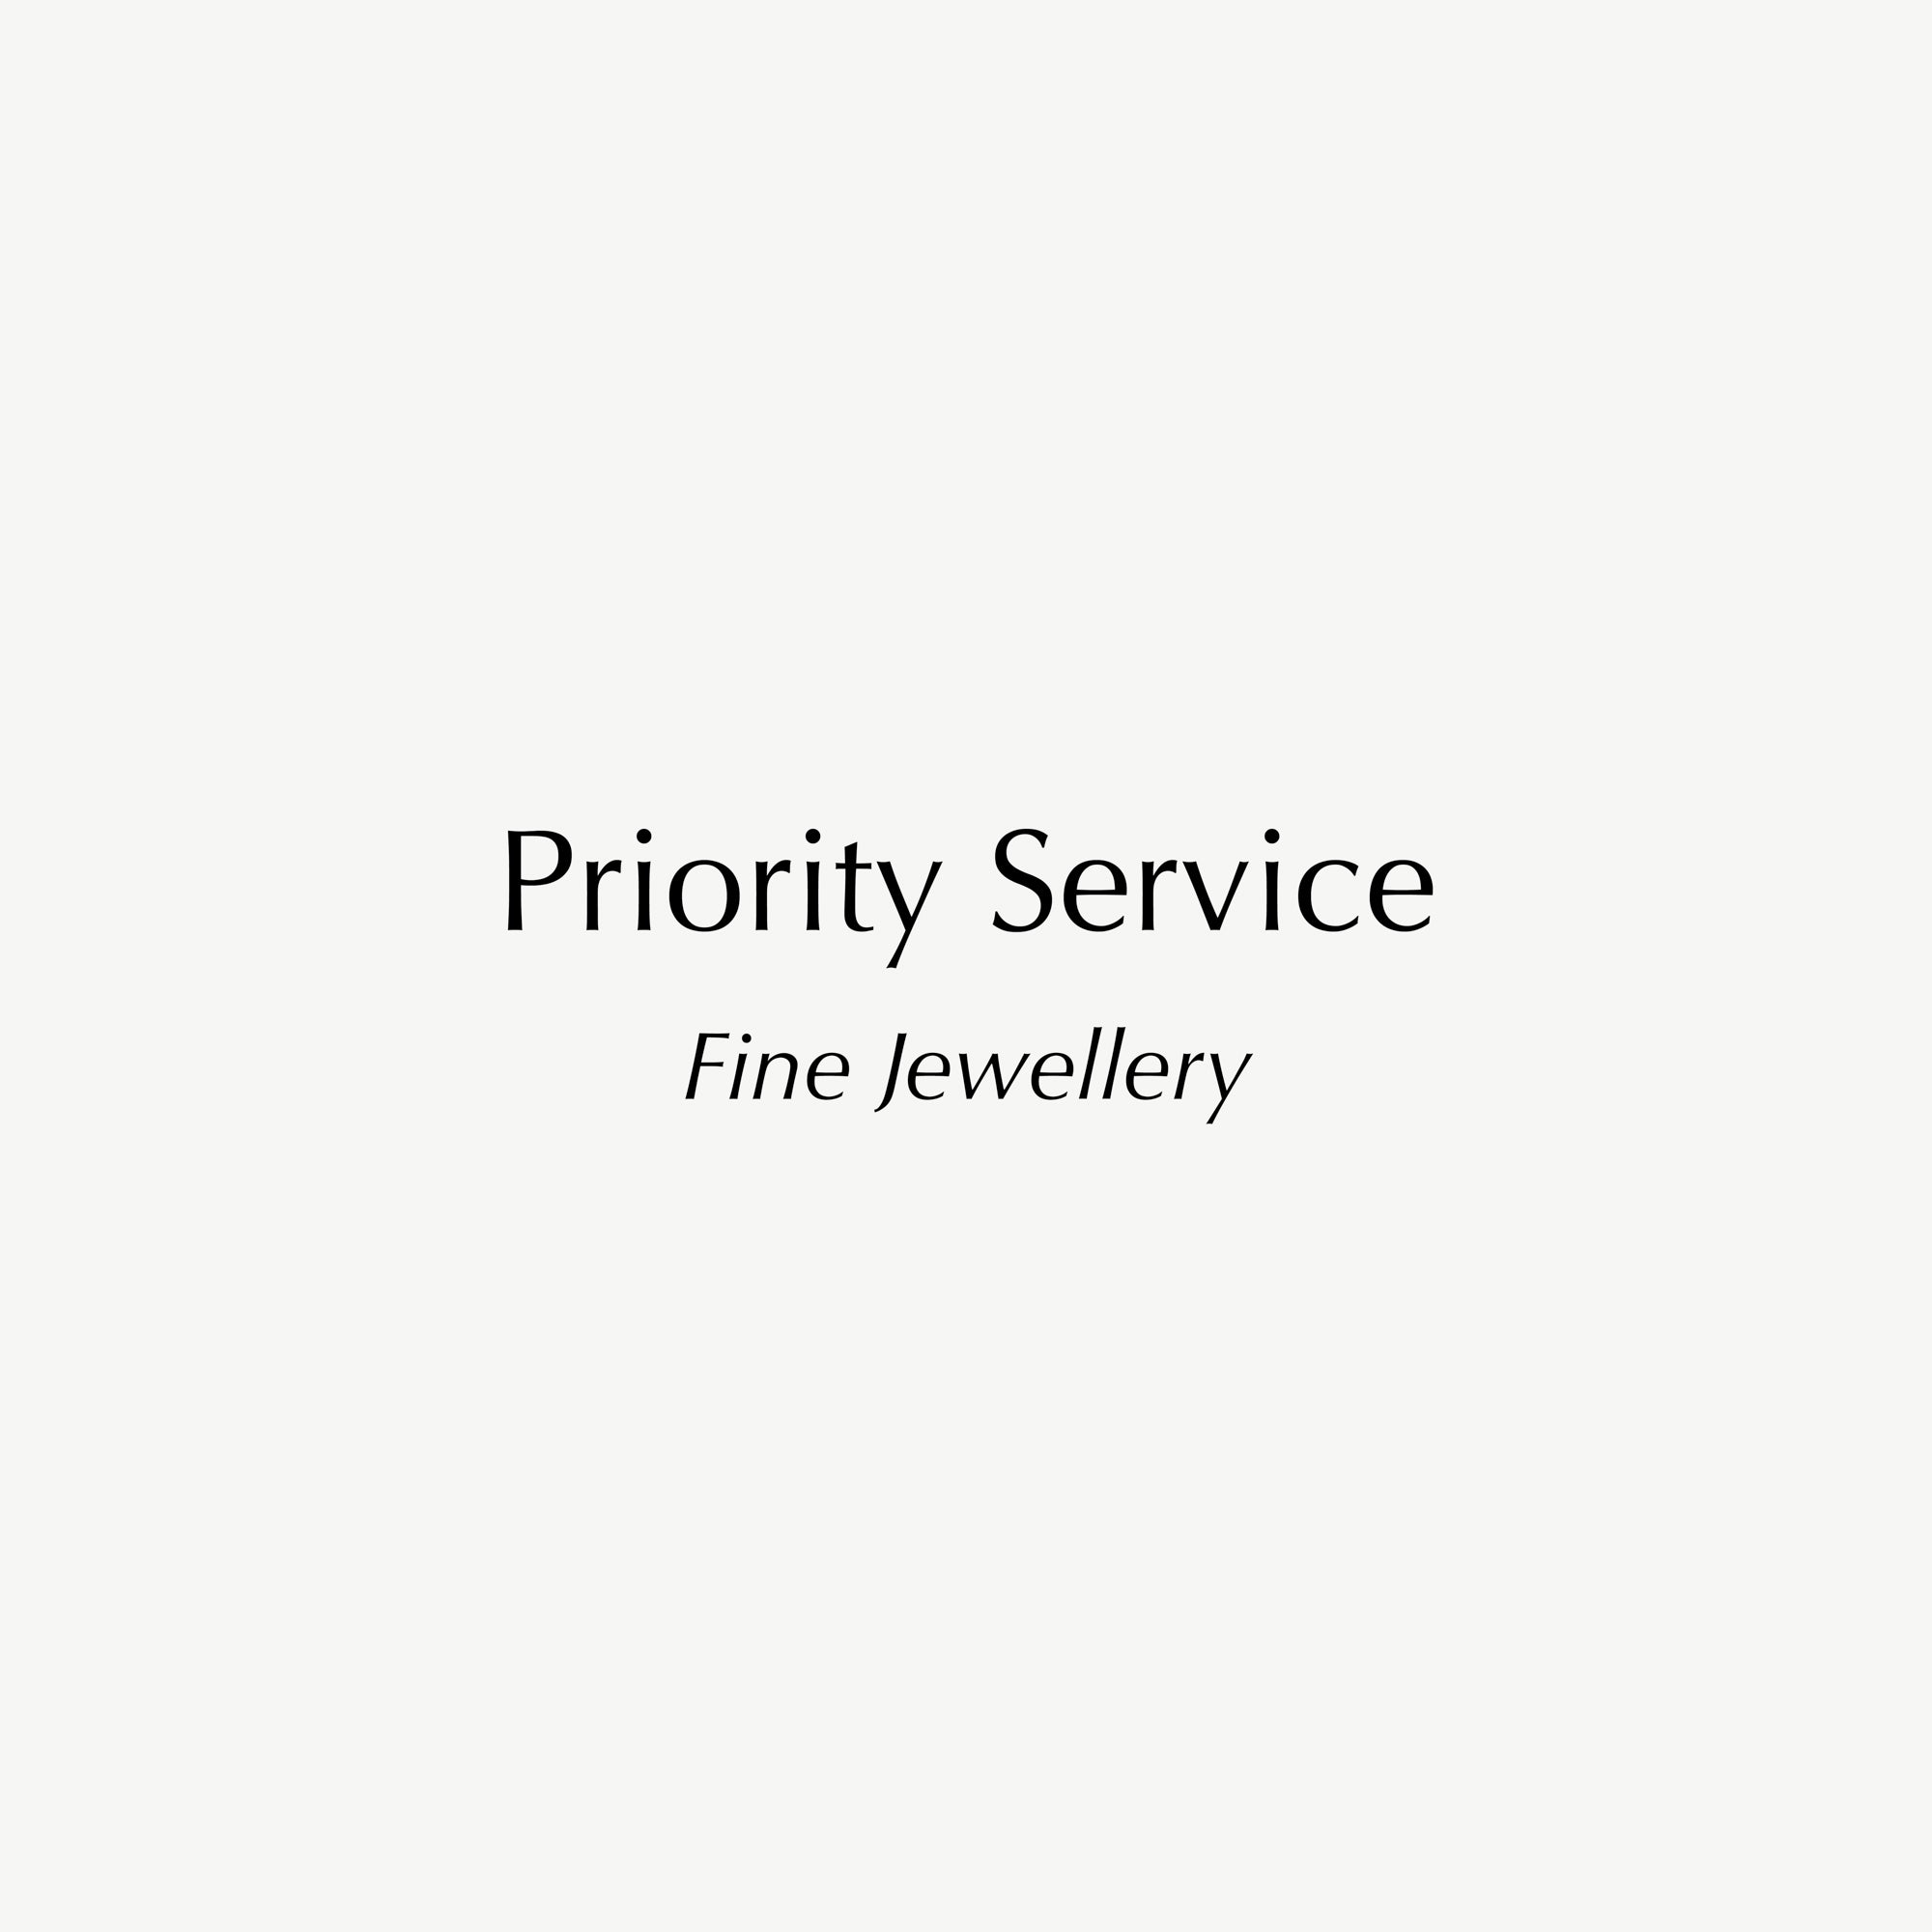 Priority Service - Fine Jewellery